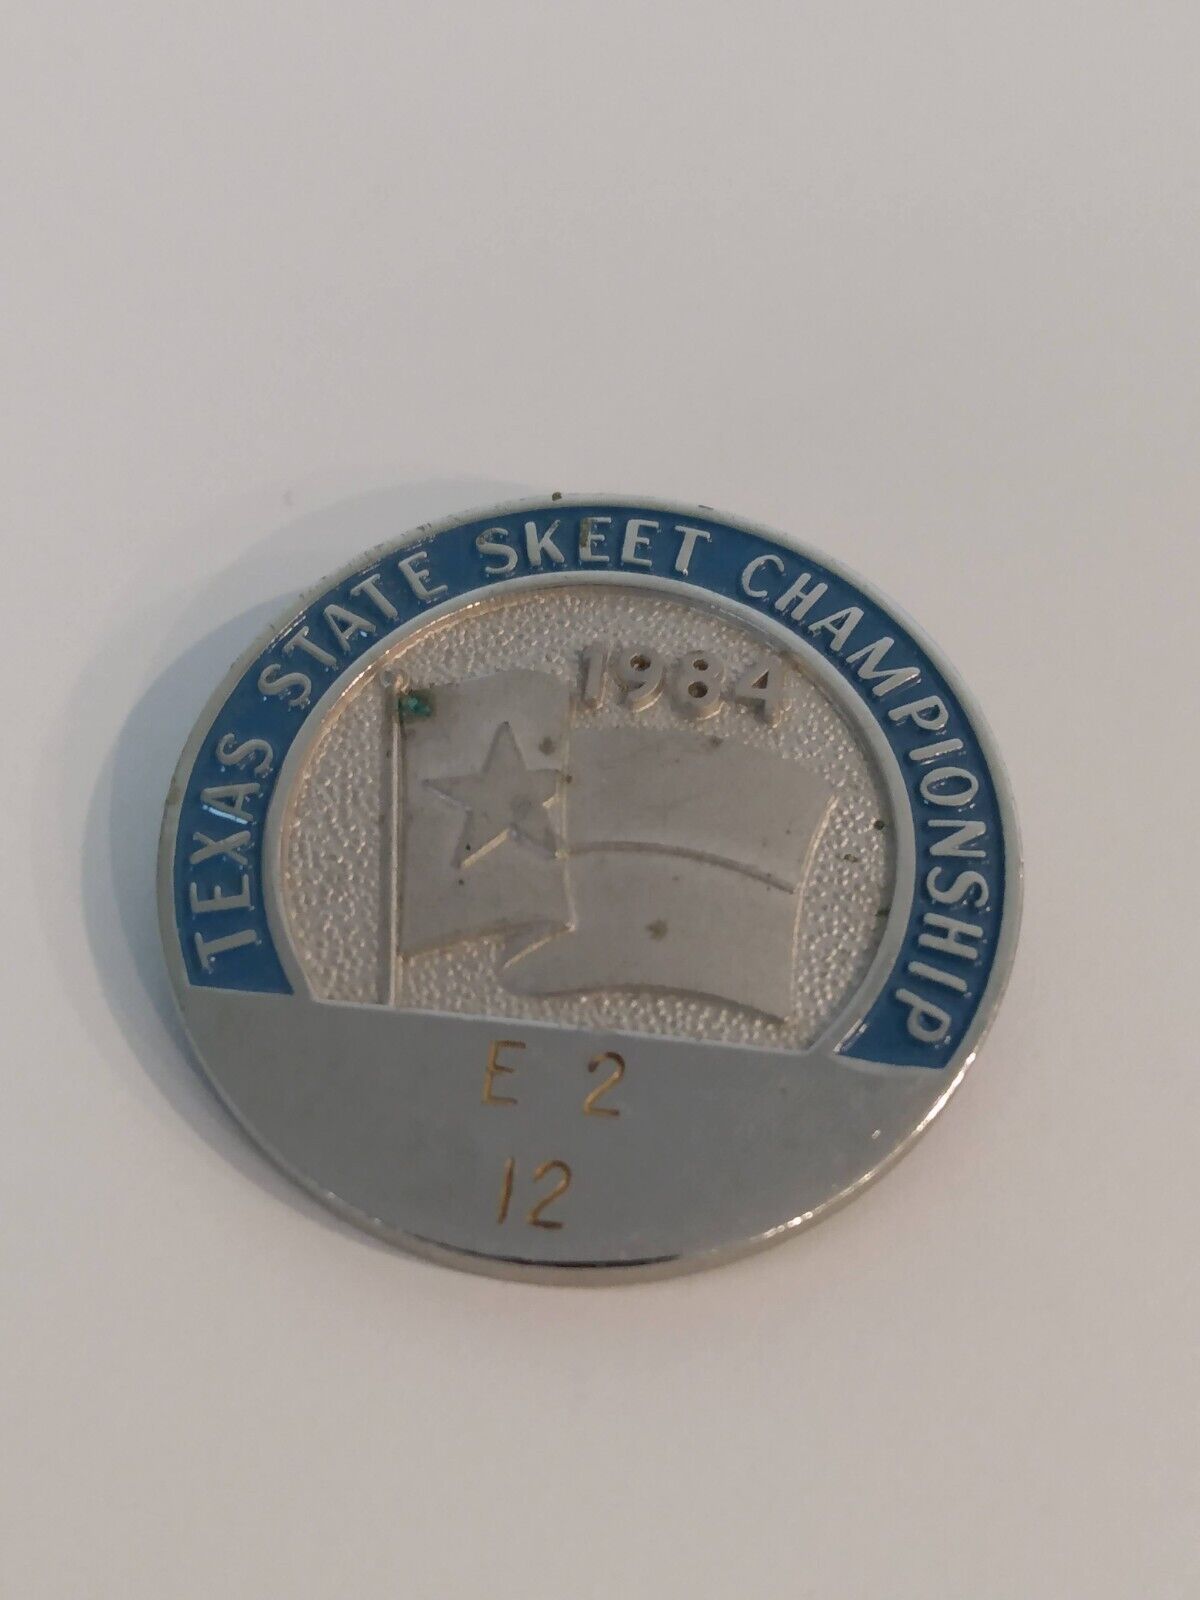 1984 Texas State Skeet Championship Lapel Pin